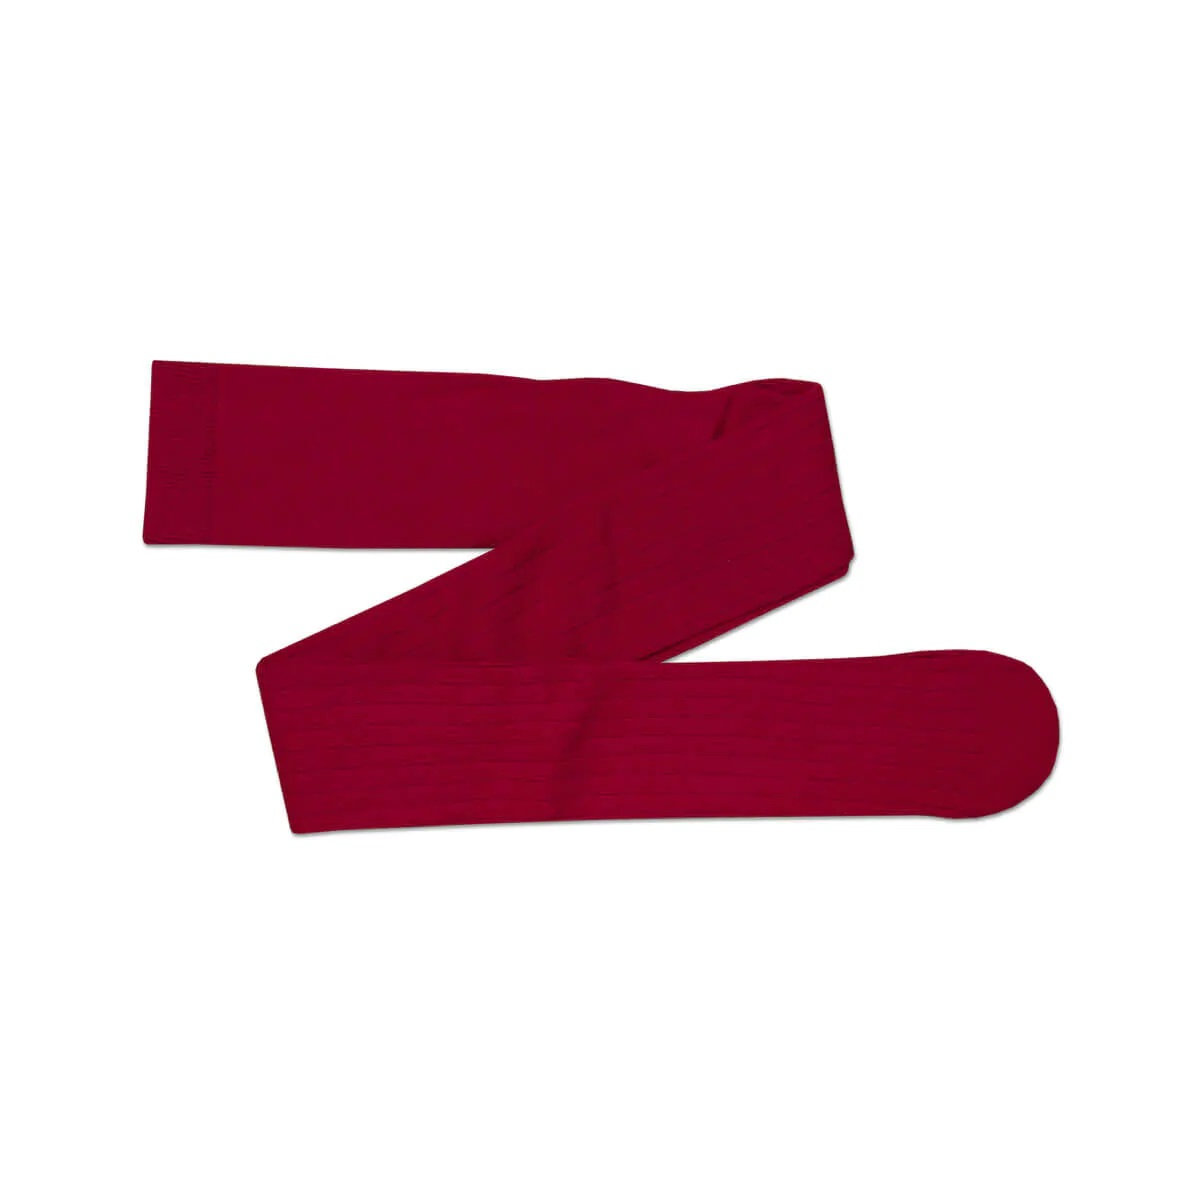 Detské pančuchové nohavice so širokým rebrom ZOJKA TATRASVIT - červená